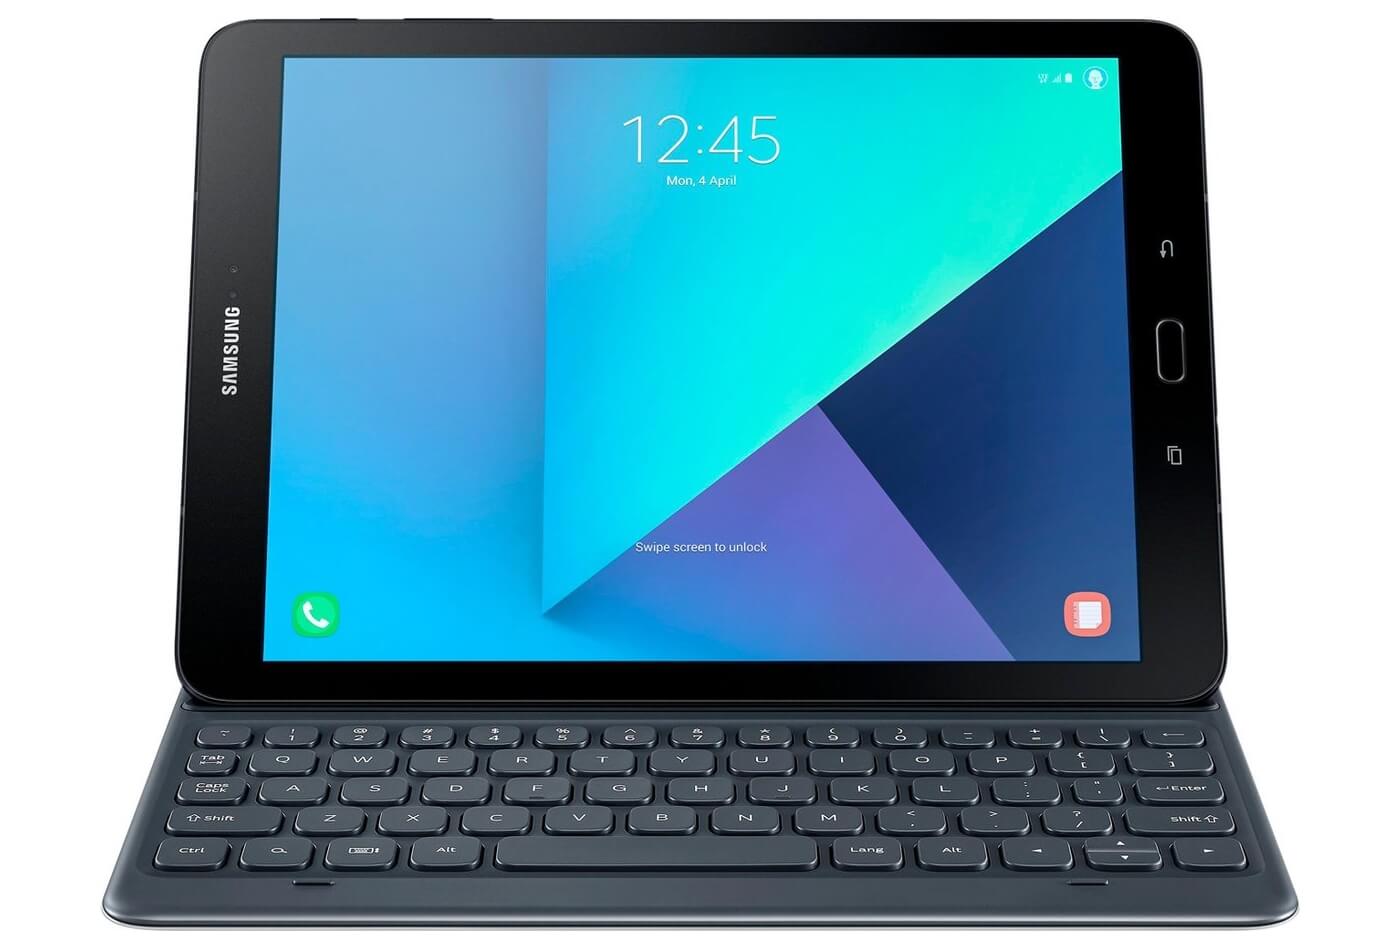 Планшет Samsung Galaxy Tab S3 оценен в $600 в США